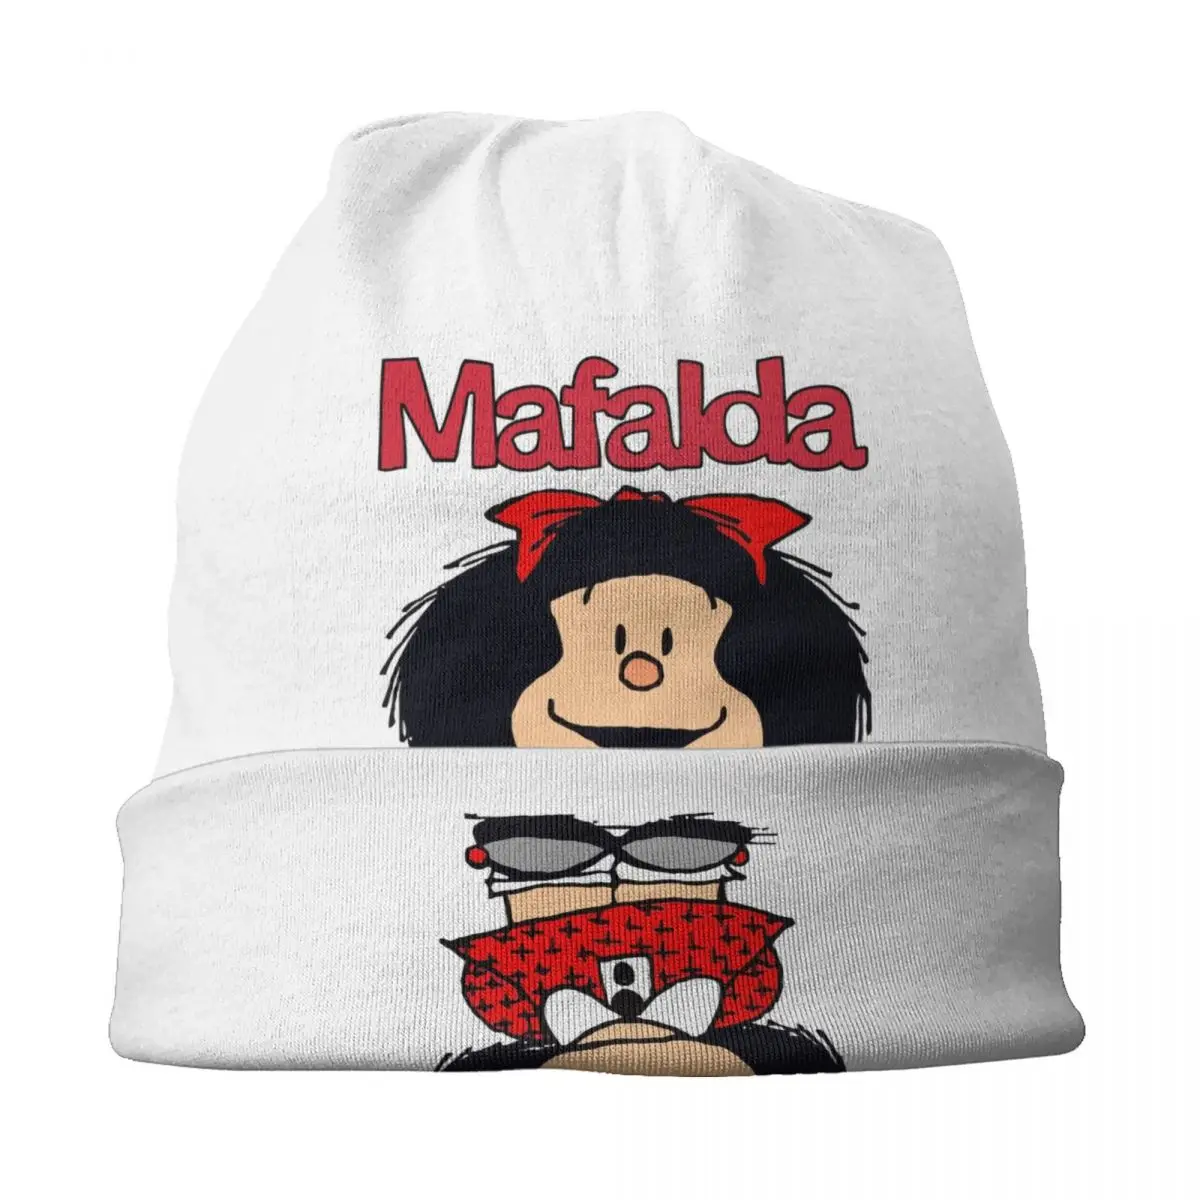 Lindo Mafalda Skullies Gorras Gorras De Los Hombres De Las Mujeres La Tendencia De Invierno Cálido Sombrero De Los Adultos Argentino De La Historieta De Quino Comics Bonnet Sombreros . ' - ' . 2